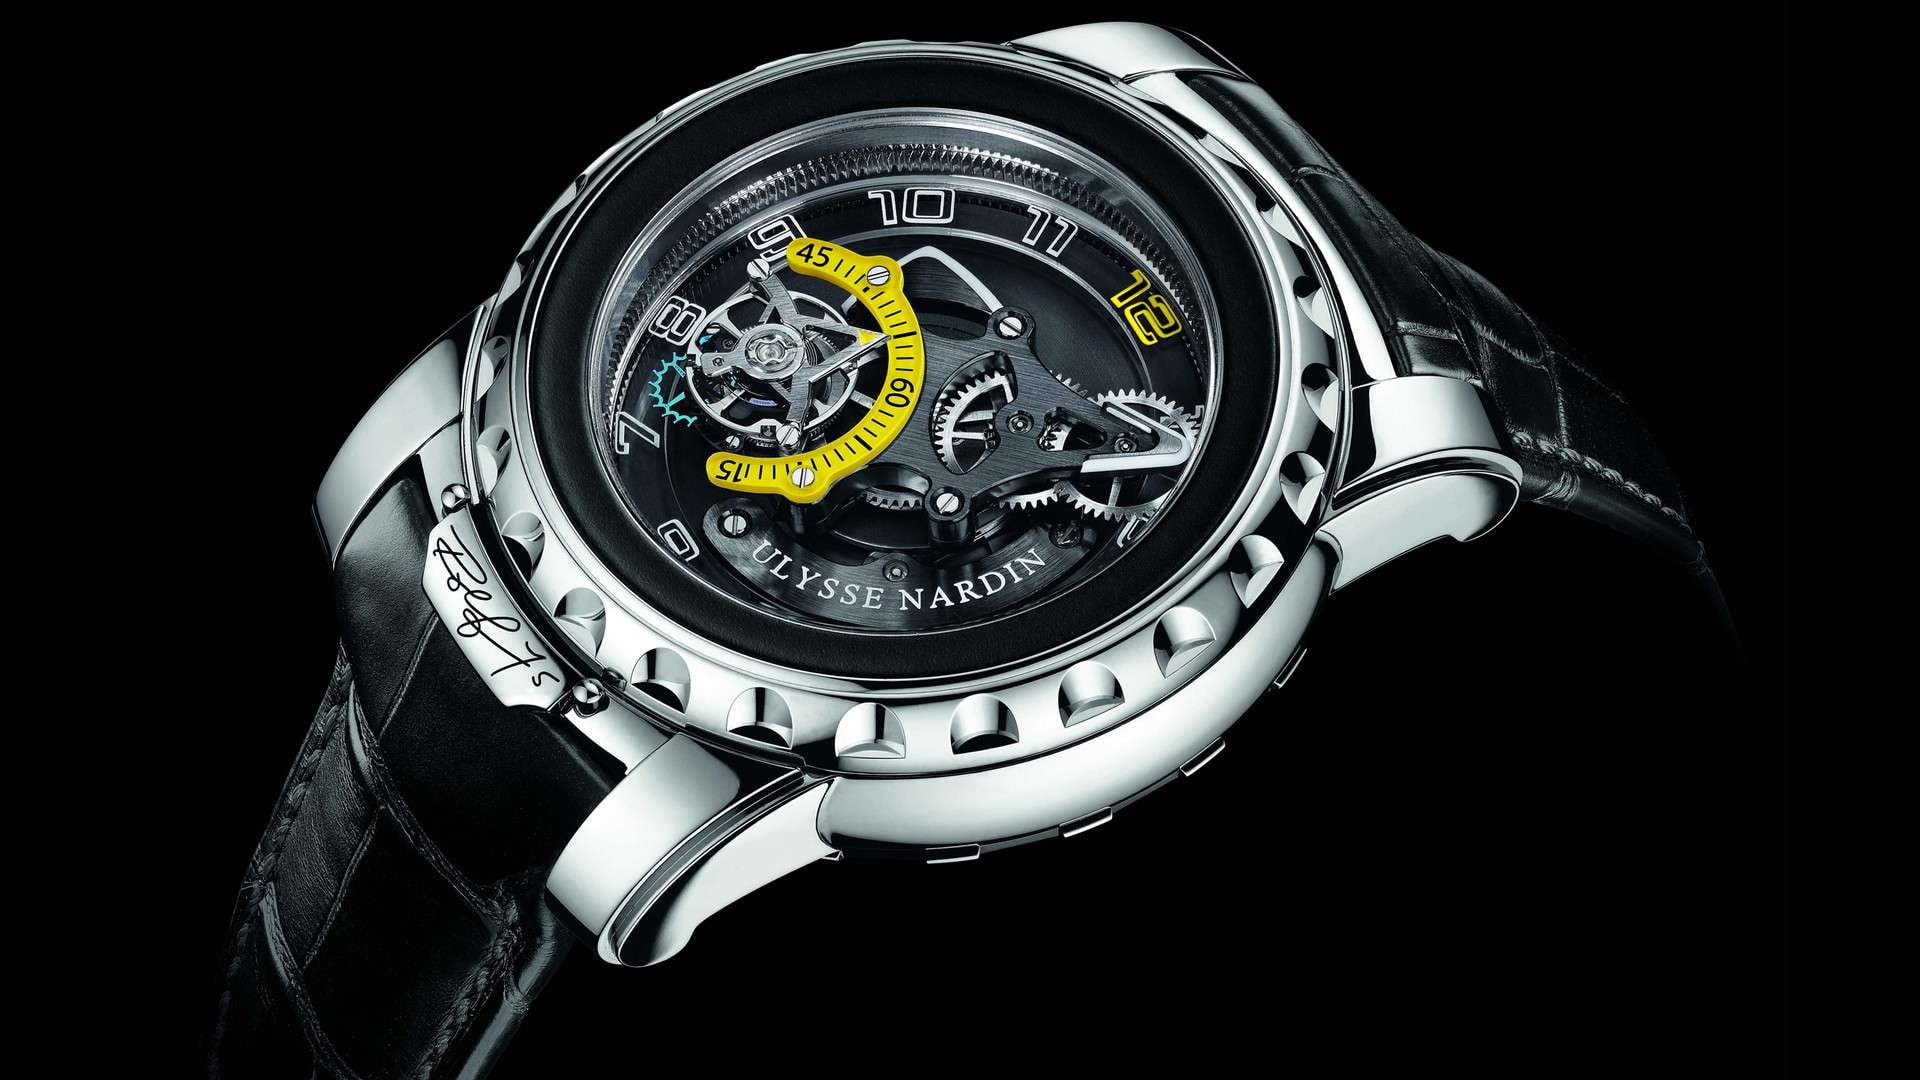 Ulysse Nardin HD, black leather strap silver skeleton watch, half open